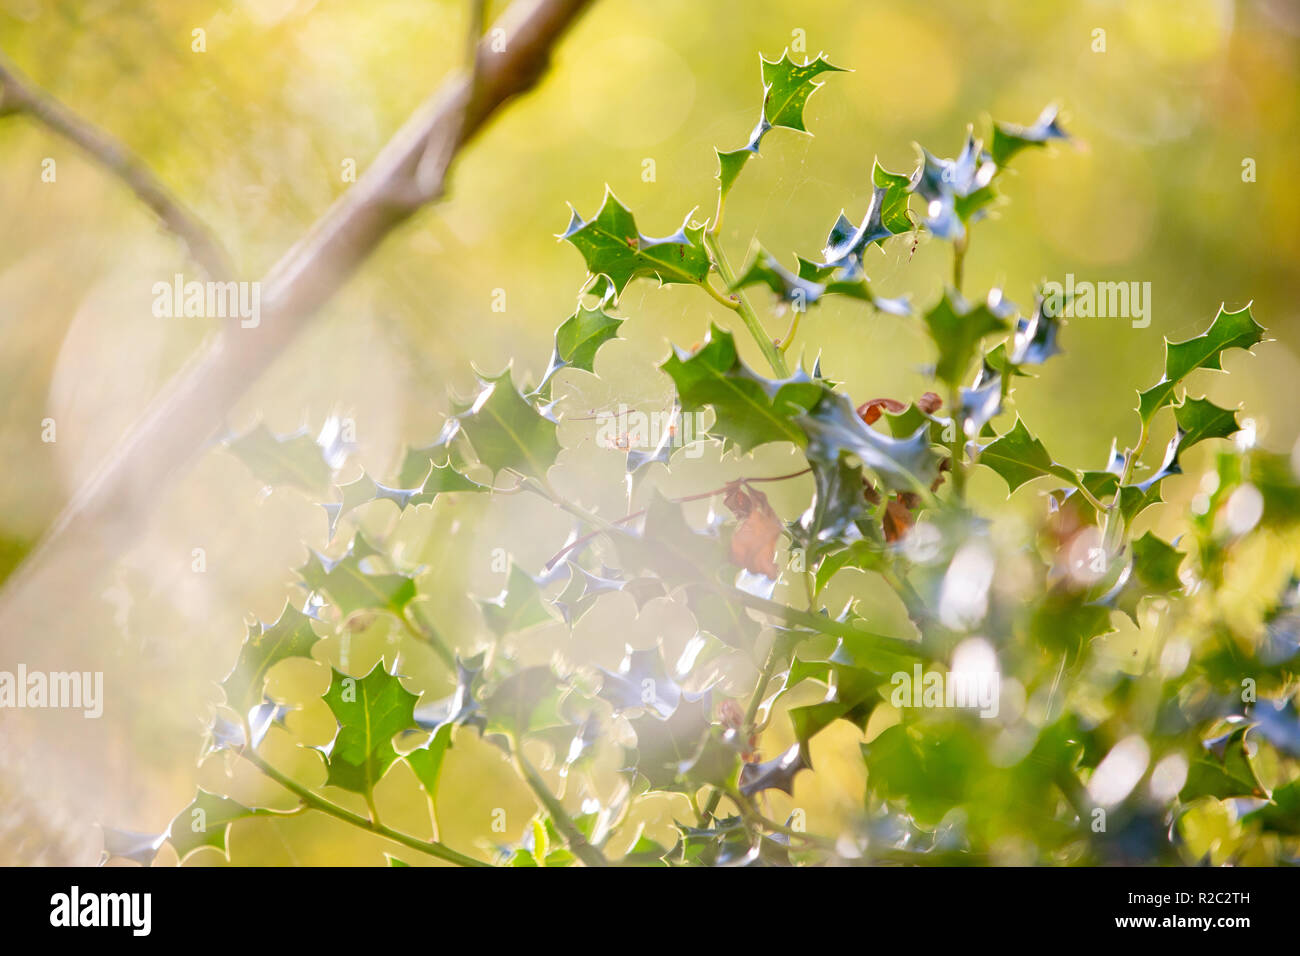 Hojas de acebo en otoño con elementos fuera de foco y destellos de lente Foto de stock